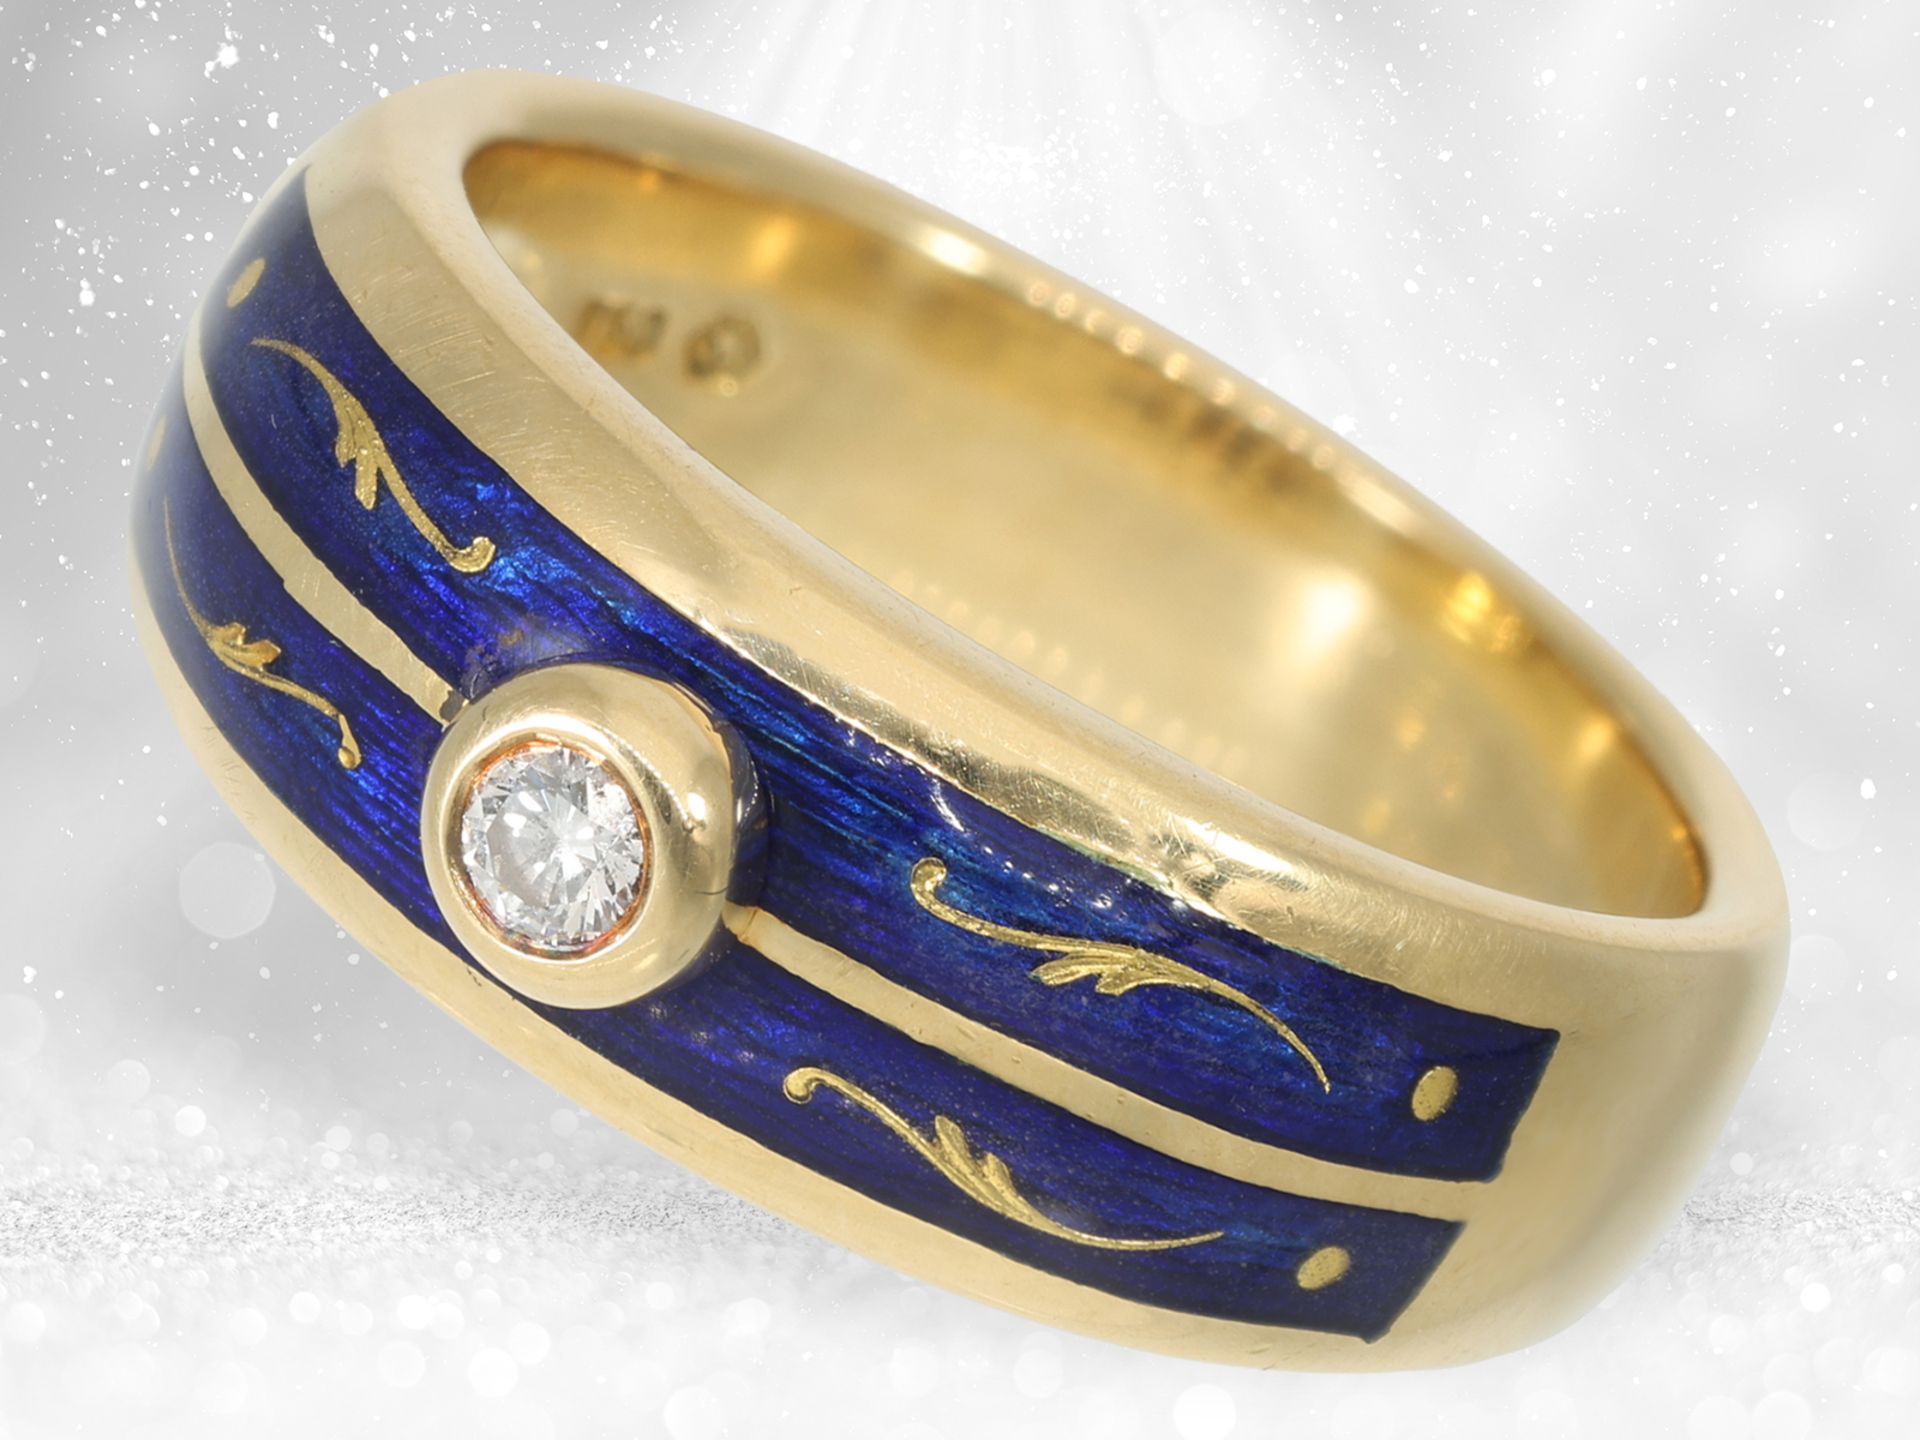 Hochwertiger und seltener limitierter Gold/Emaille-Ring mit Brillant, Fabergé by Victor Mayer, inter - Bild 3 aus 4